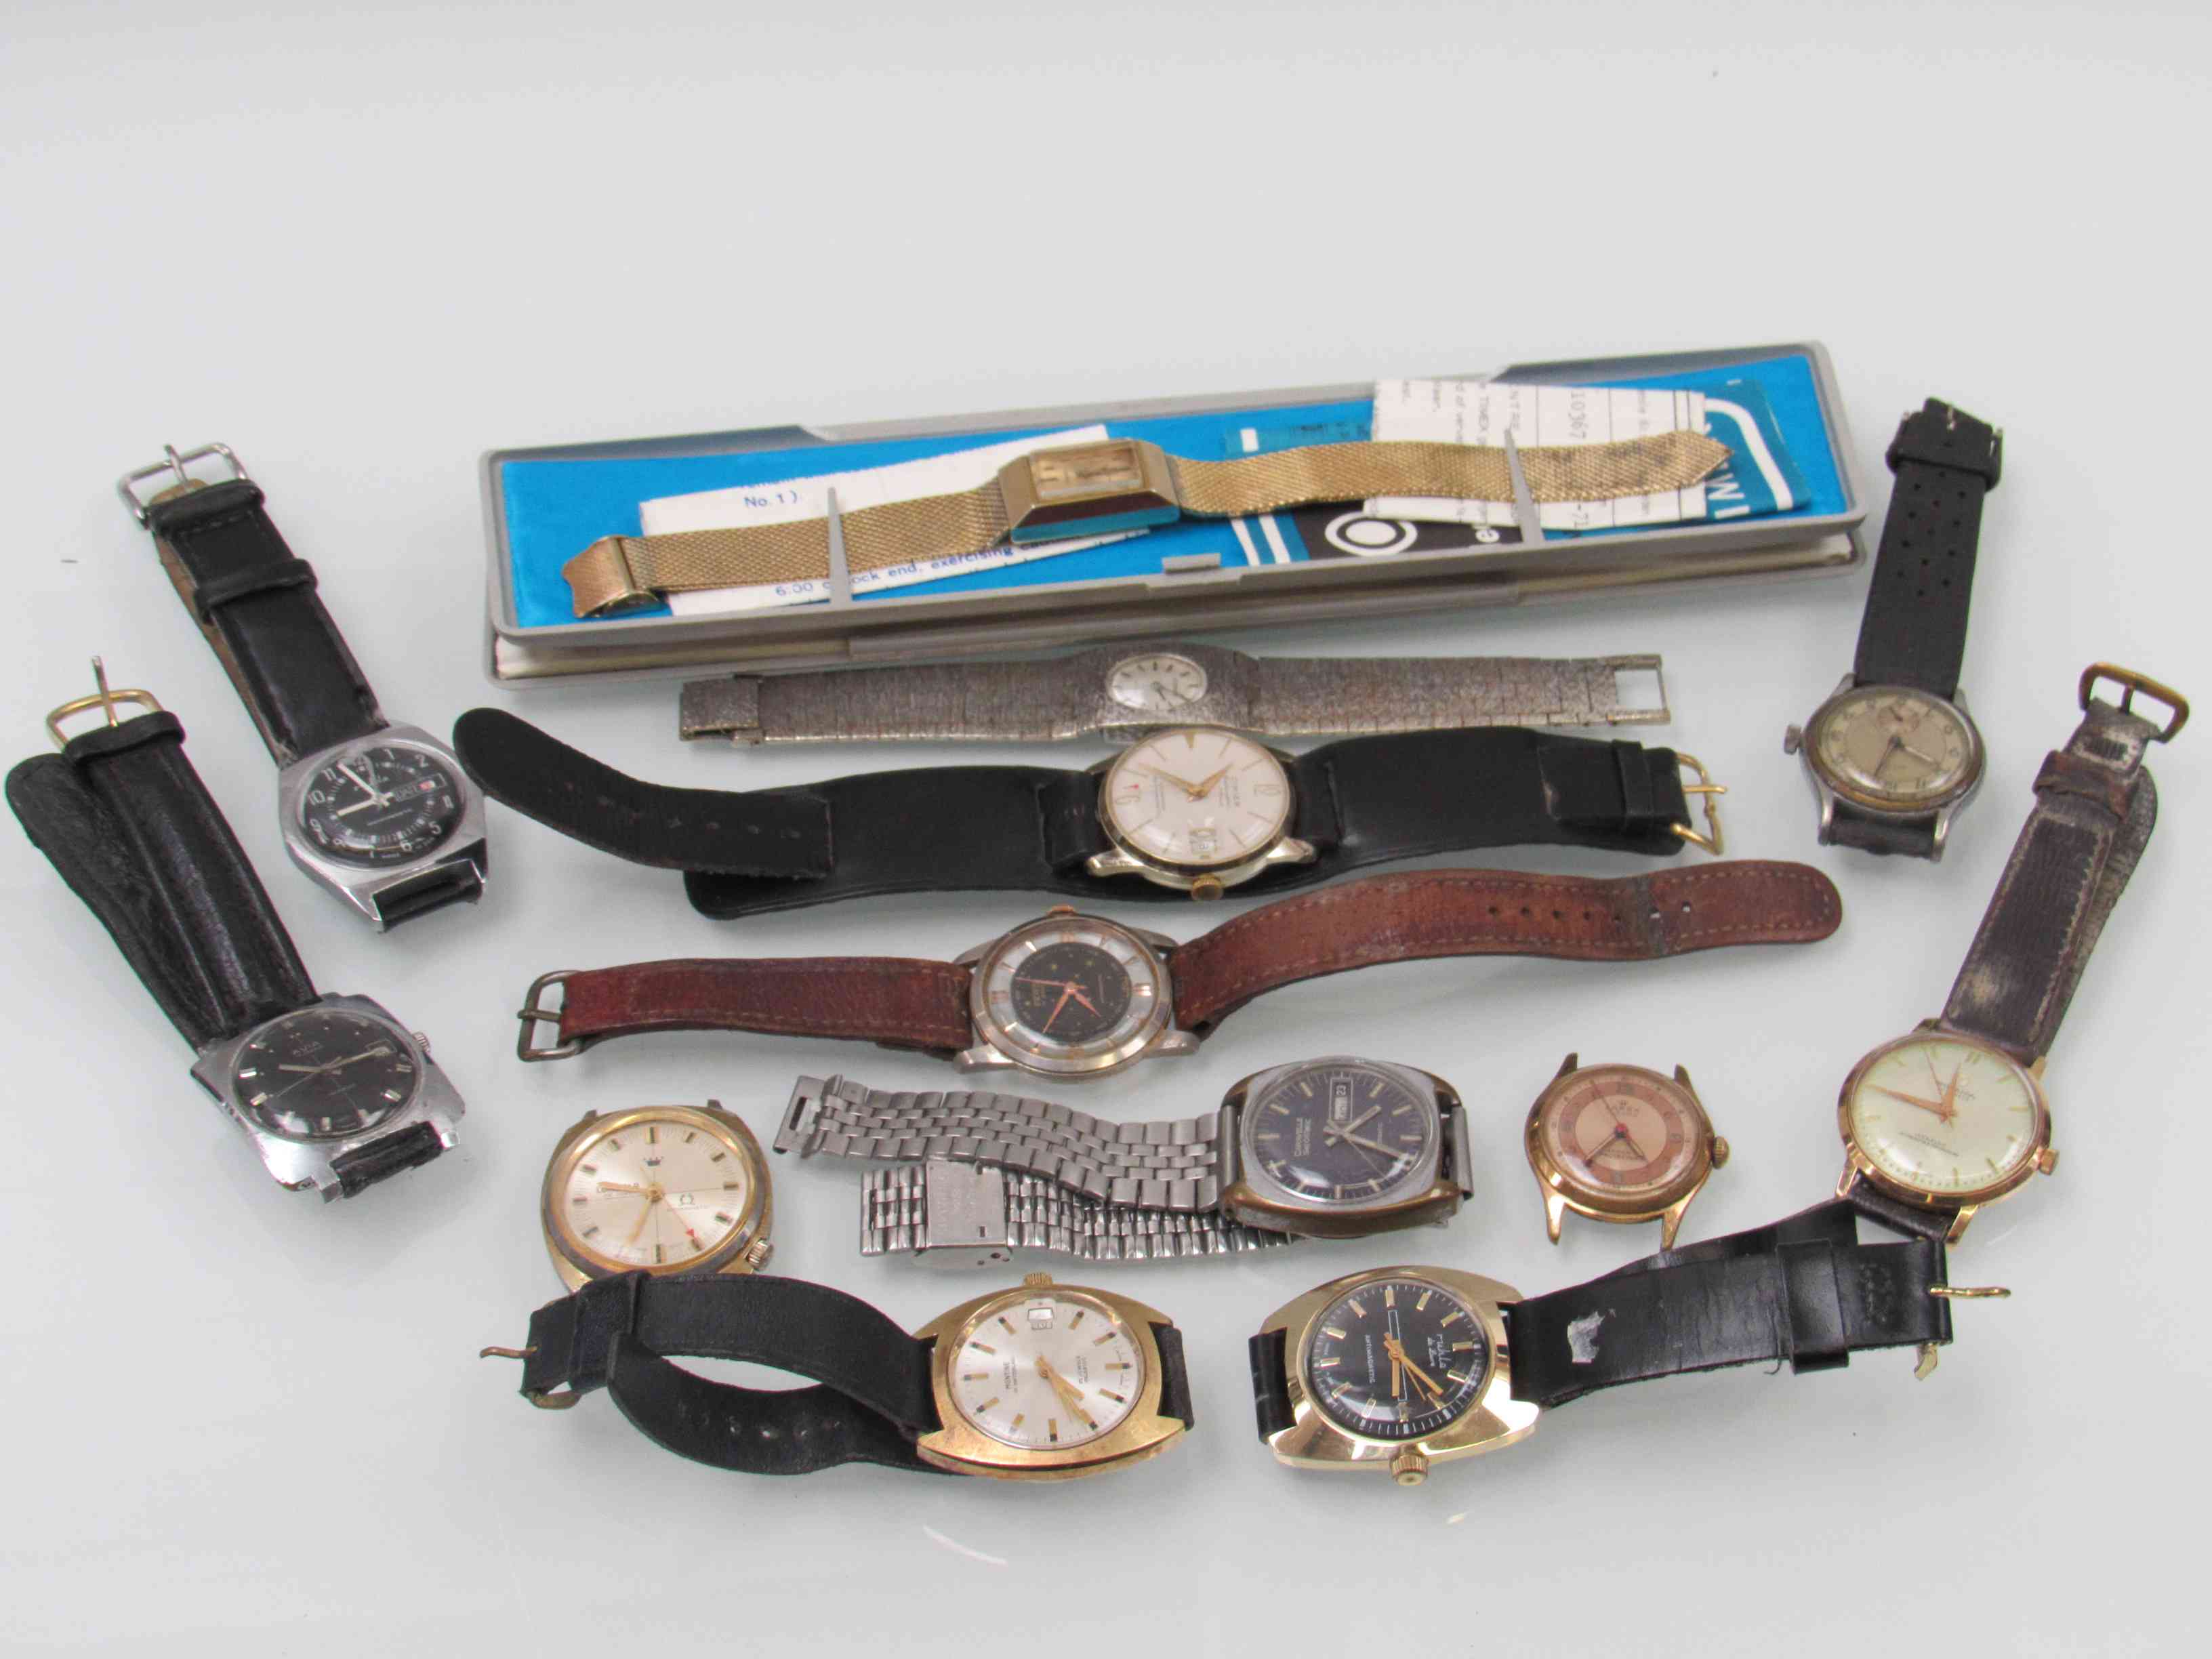 Thirteen vintage wristwatches including Montine